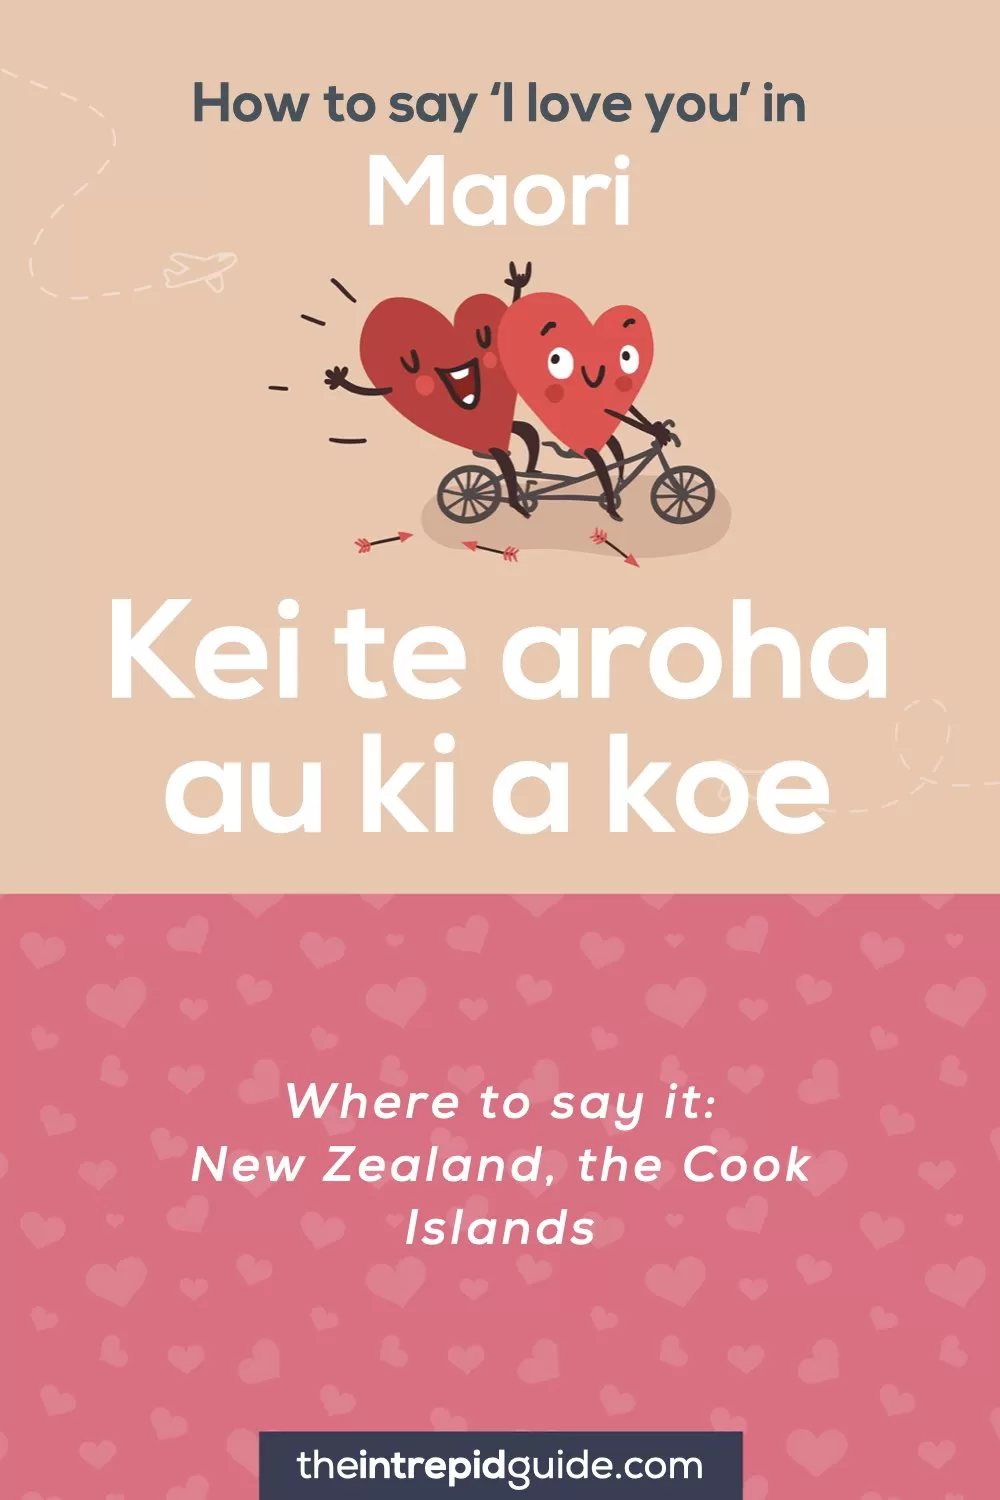 How to say I love you in different languages - Maori - Kei te aroha au ki a koe